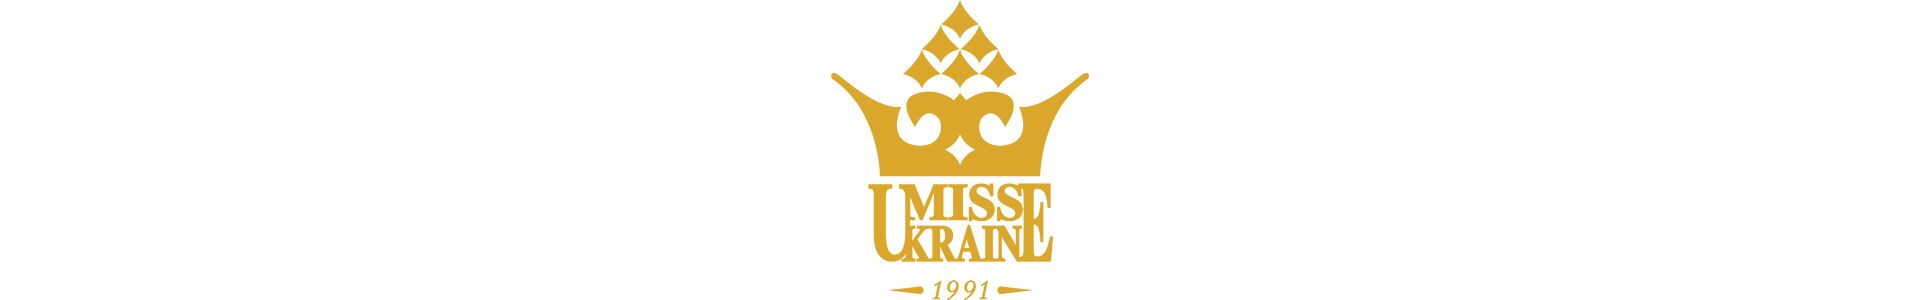 Офіційне звернення директора конкурсу «Міс Україна» Вікторії Кіосе до першої леді США Меланії Трамп із запрошенням на фінал конкурсу «Міс Україна 2019».